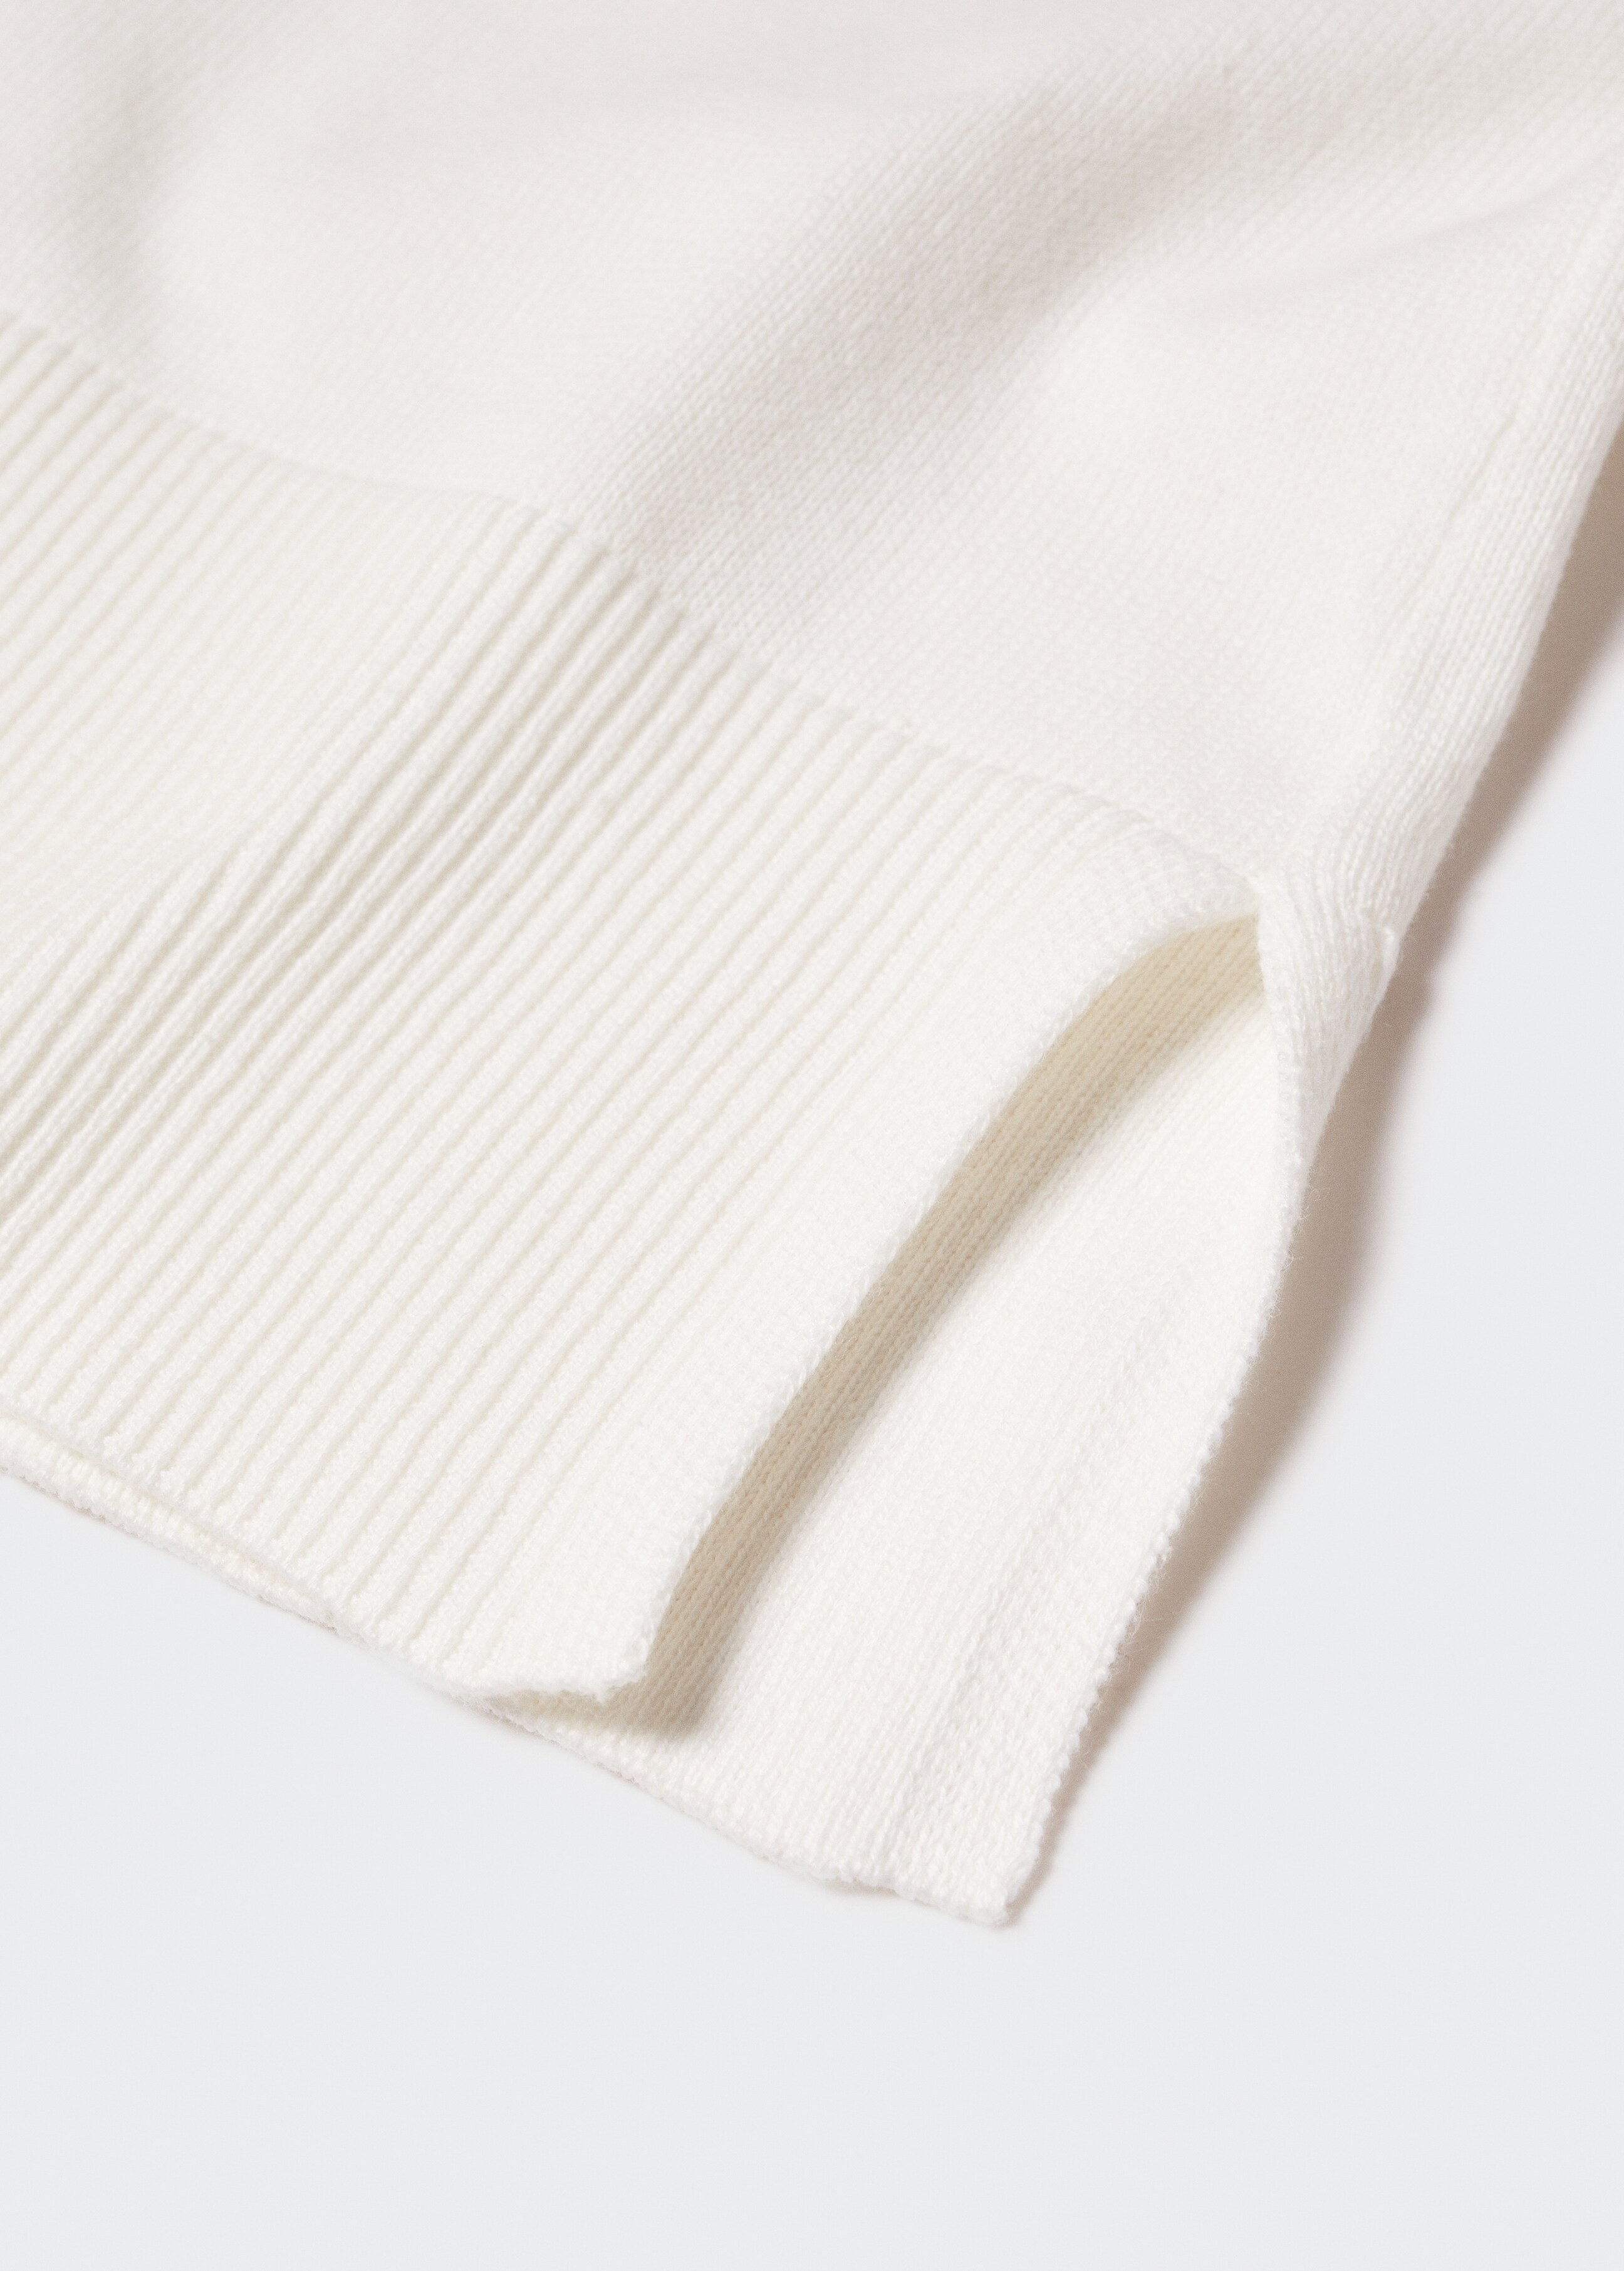 Cardigan maglia cotone - Dettaglio dell'articolo 8